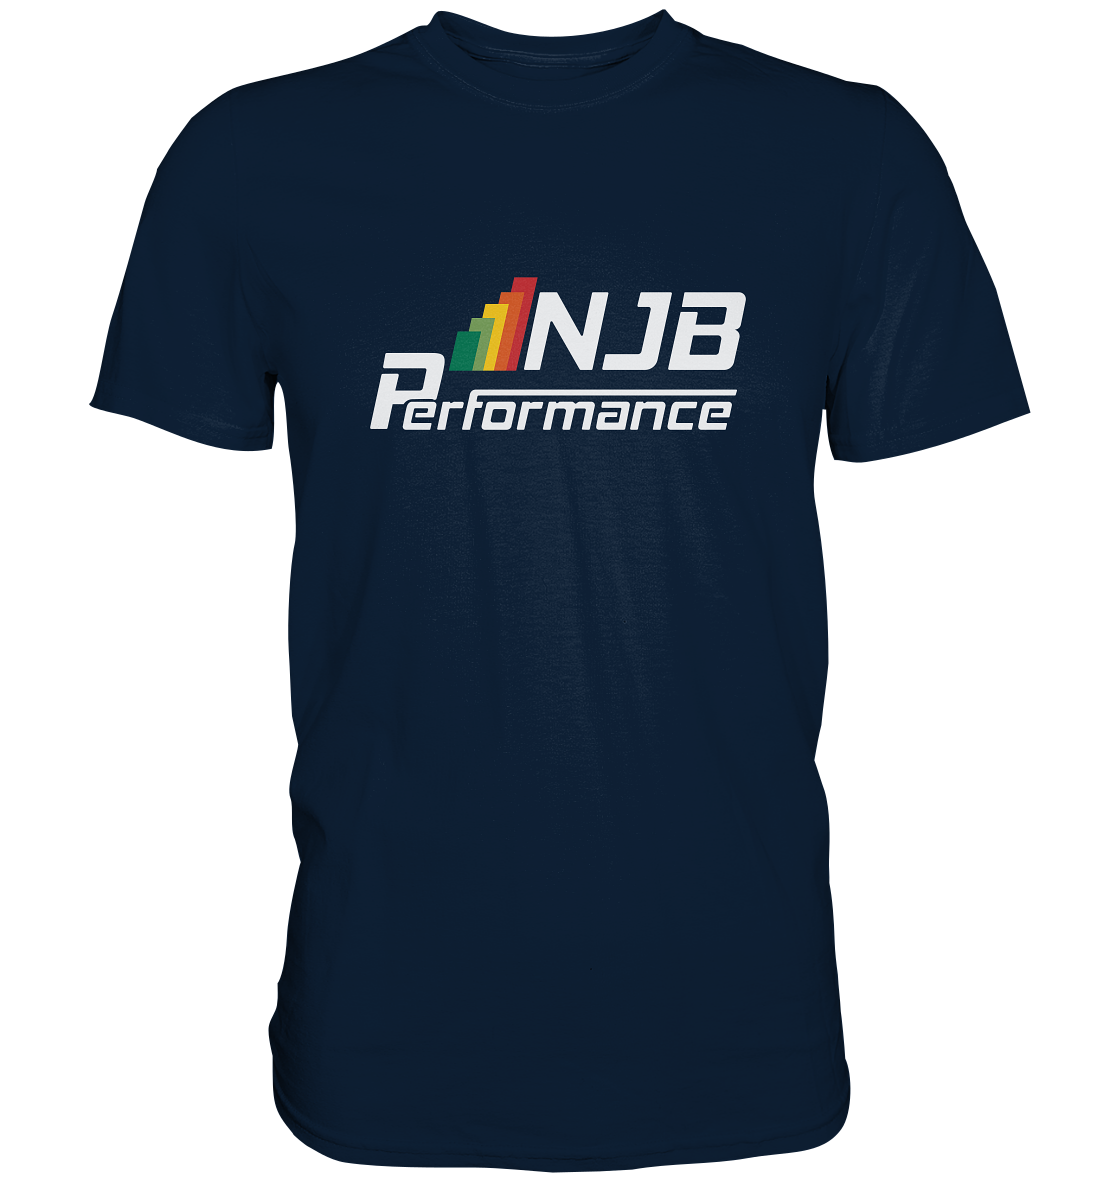 NJB PERFORMANCE - Basic Shirt